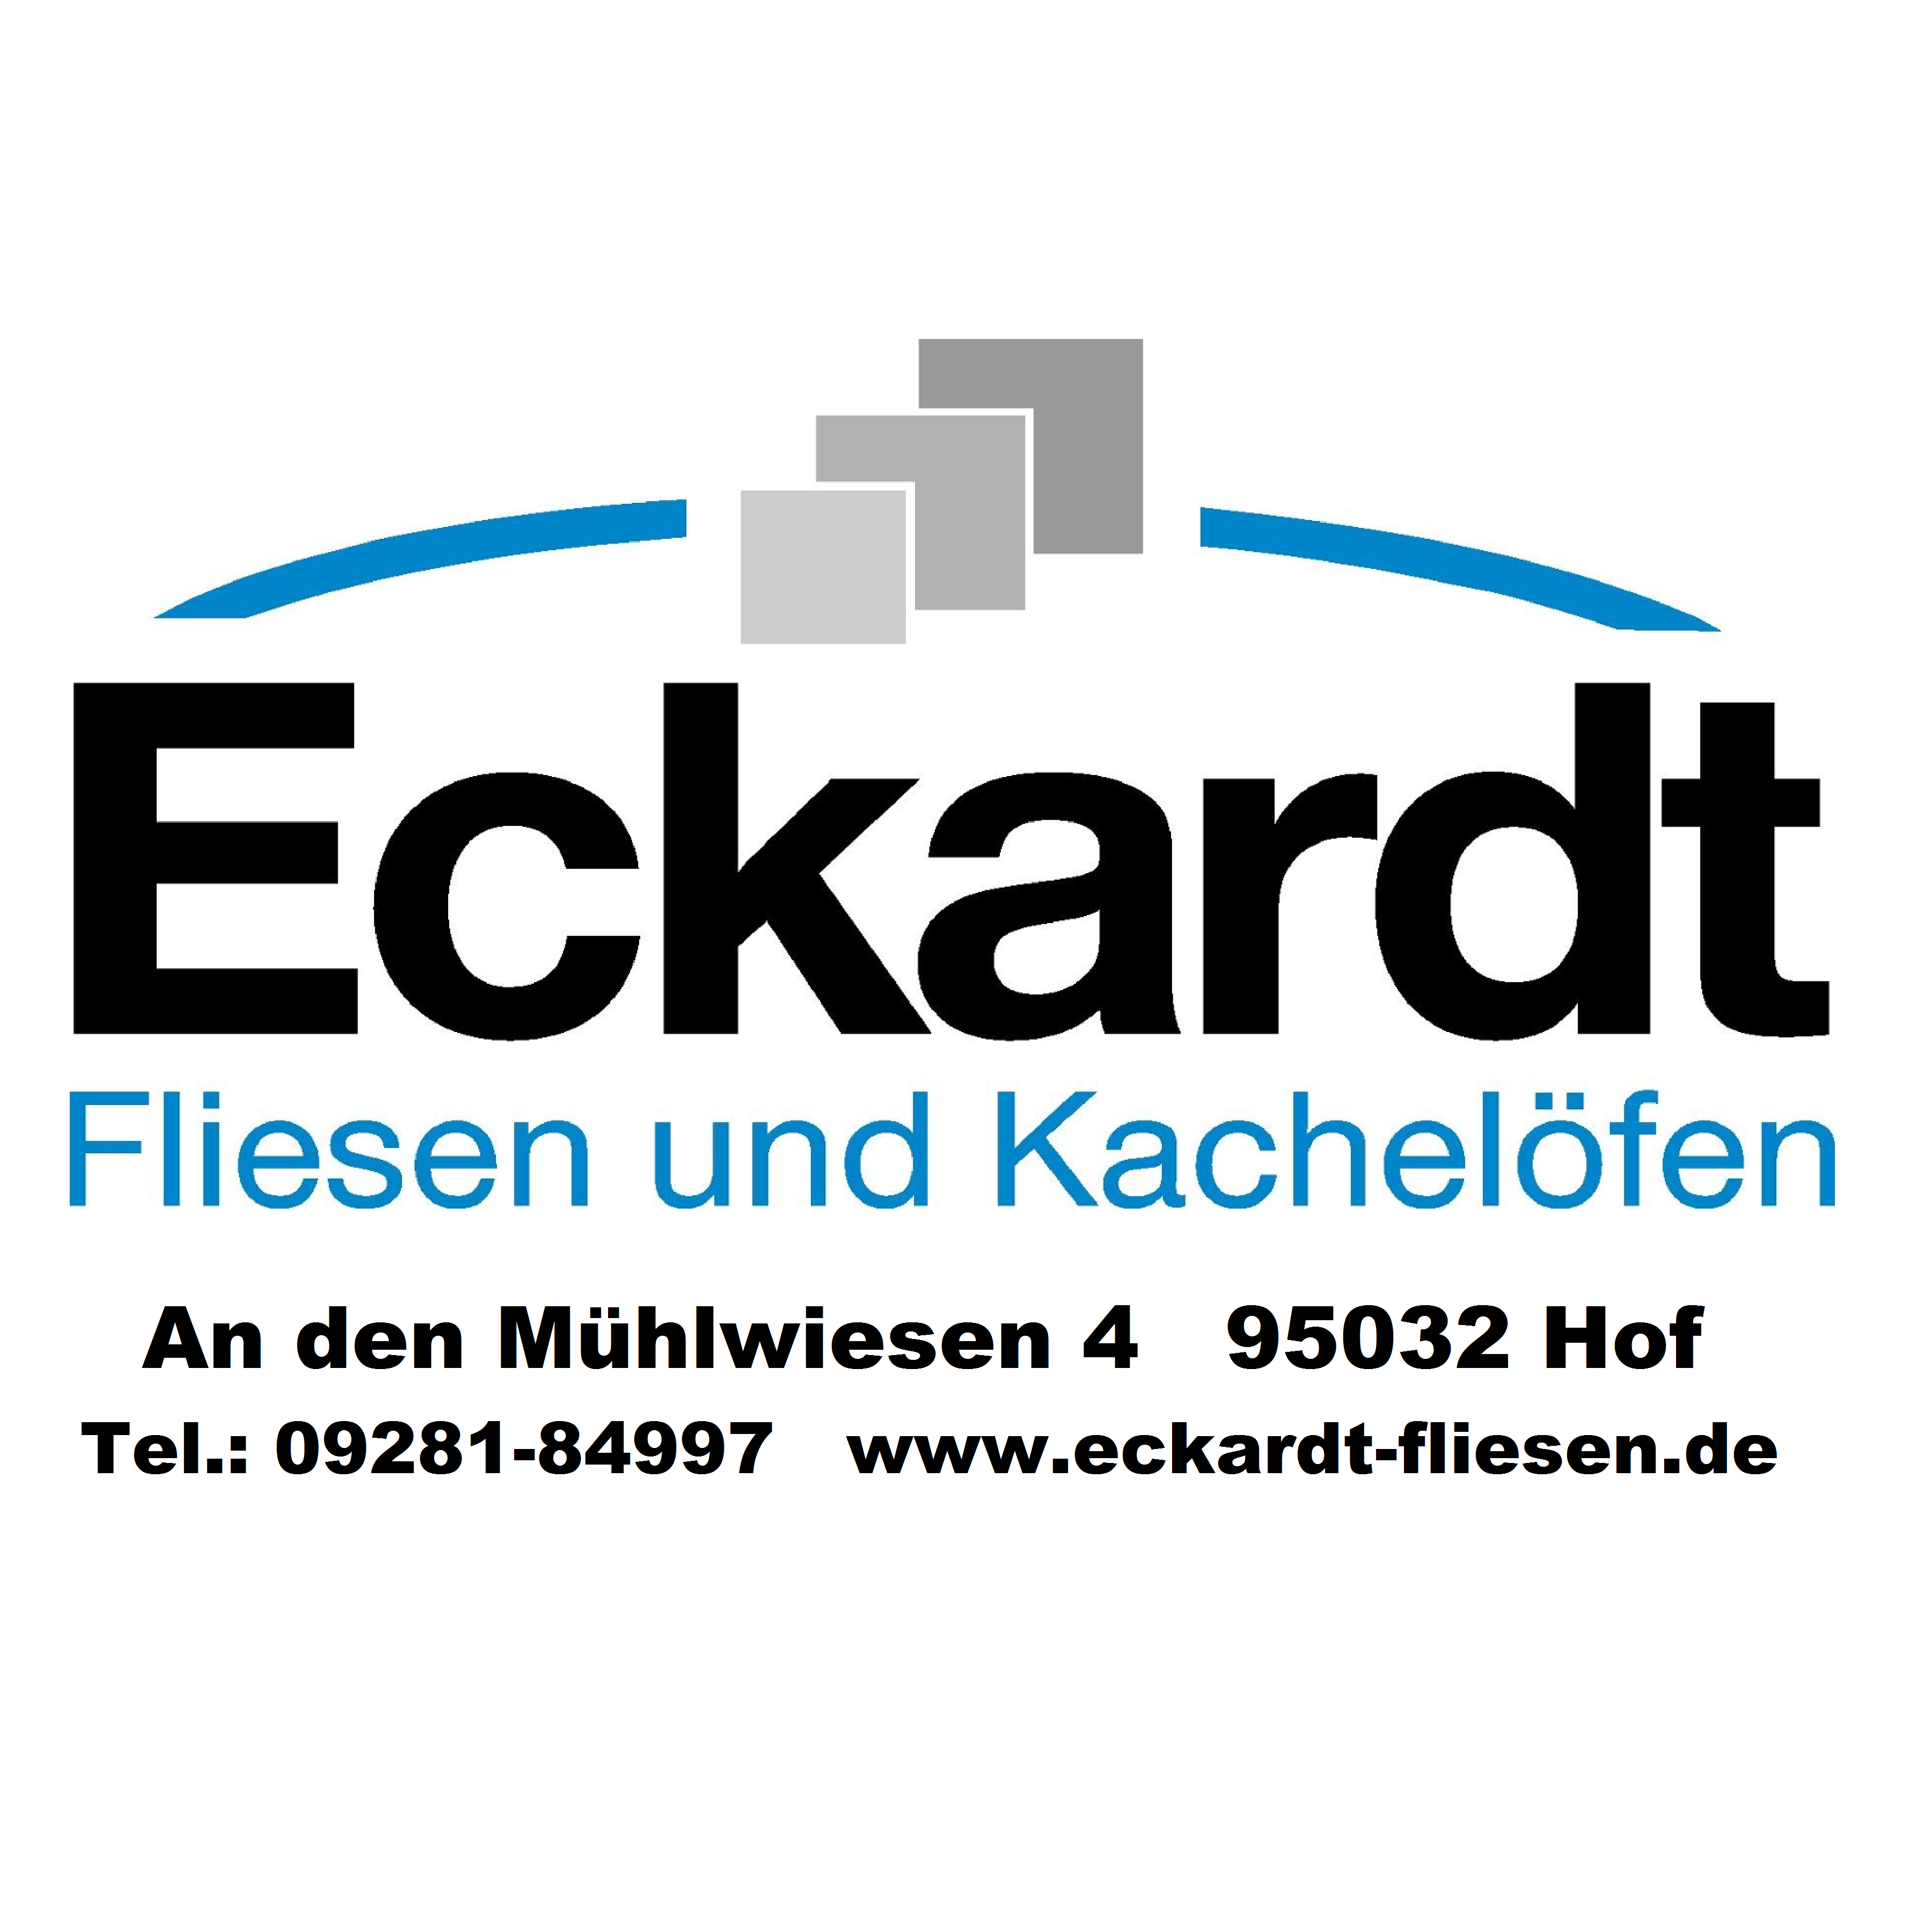 Eckardt Fliesen und Kachelöfen in Hof (Saale) - Logo